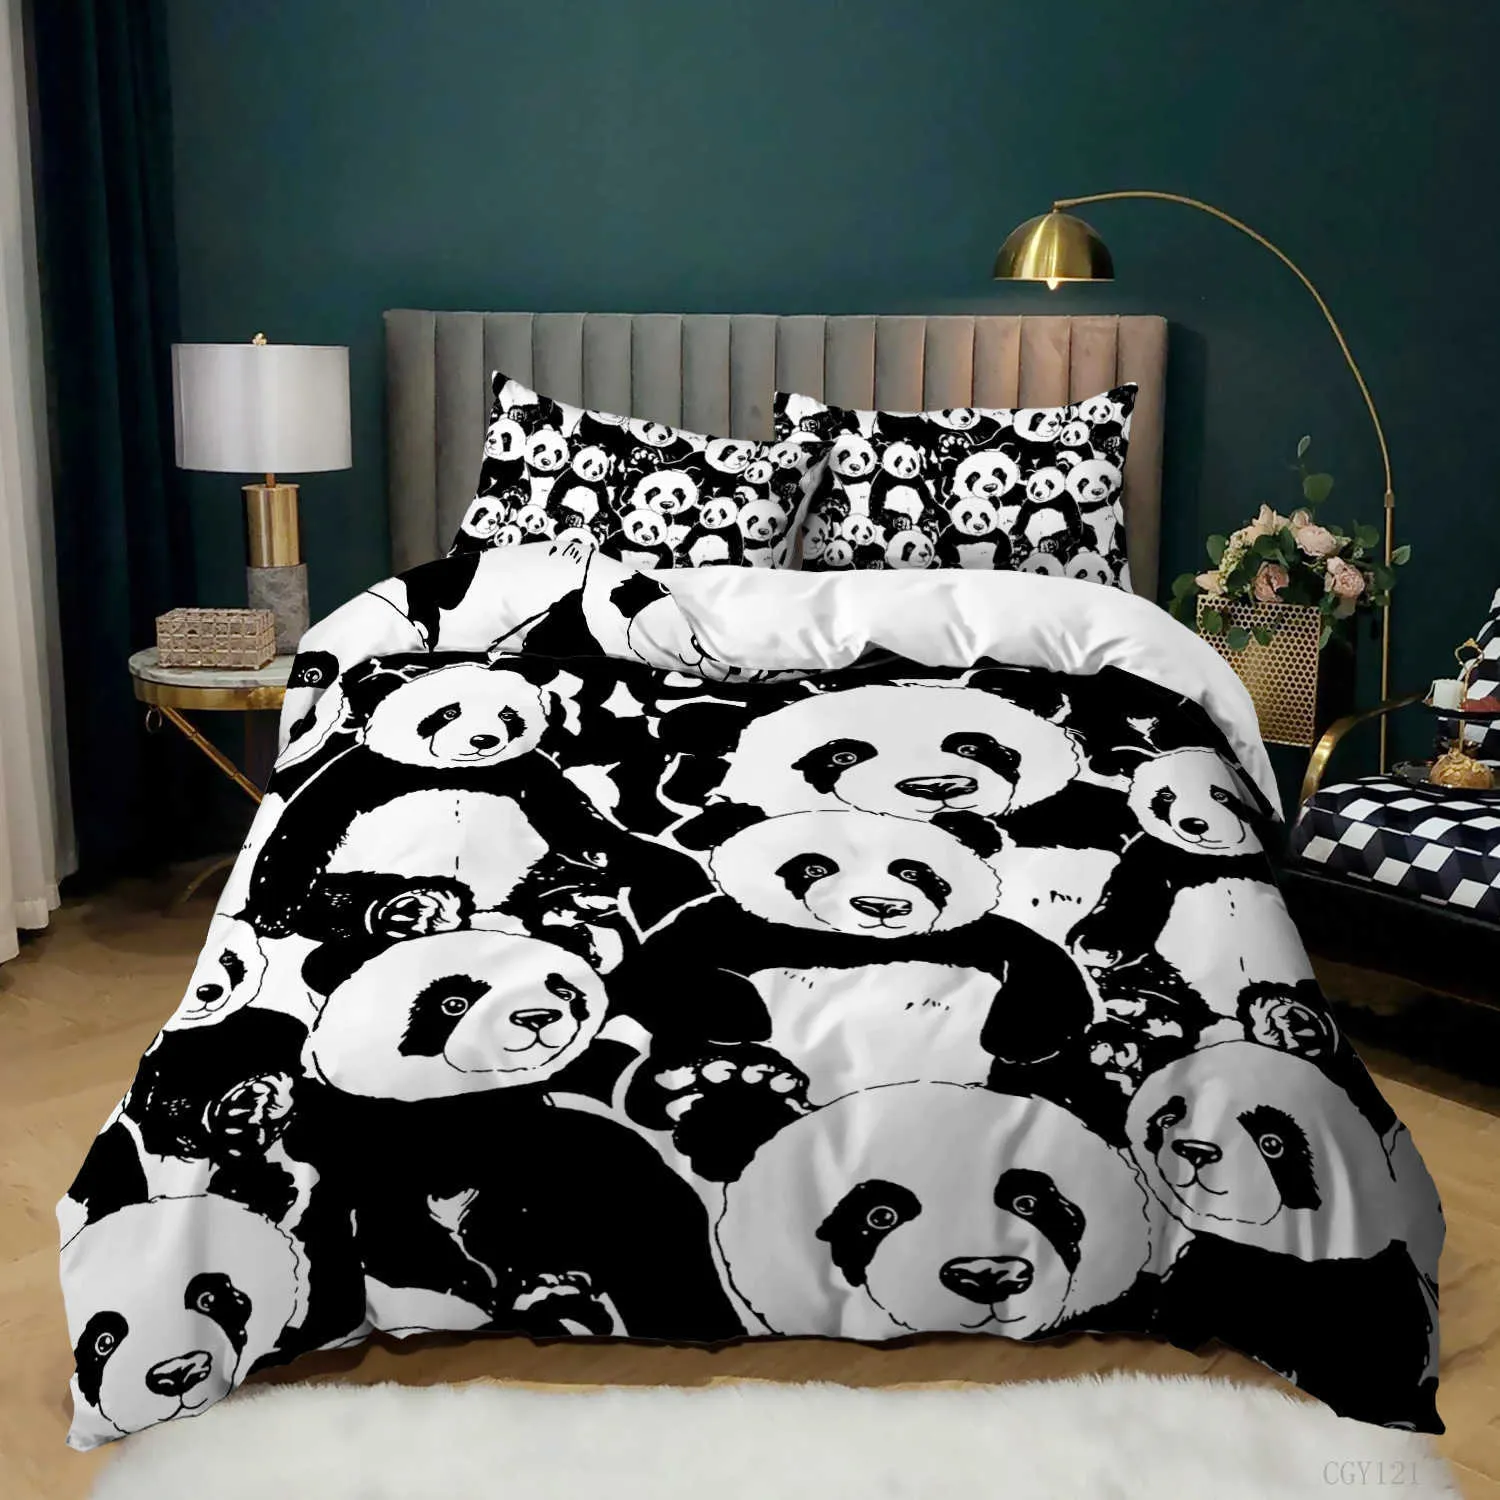 Bettwäsche-Sets: Panda-Bettbezug, Cartoon-Panda-bedrucktes Bettwäsche-Set für Kinder, Jungen und Mädchen, Mikrofaser, niedliches Tier, Trösterbezug, 23-teilig, volle Größe Z0612